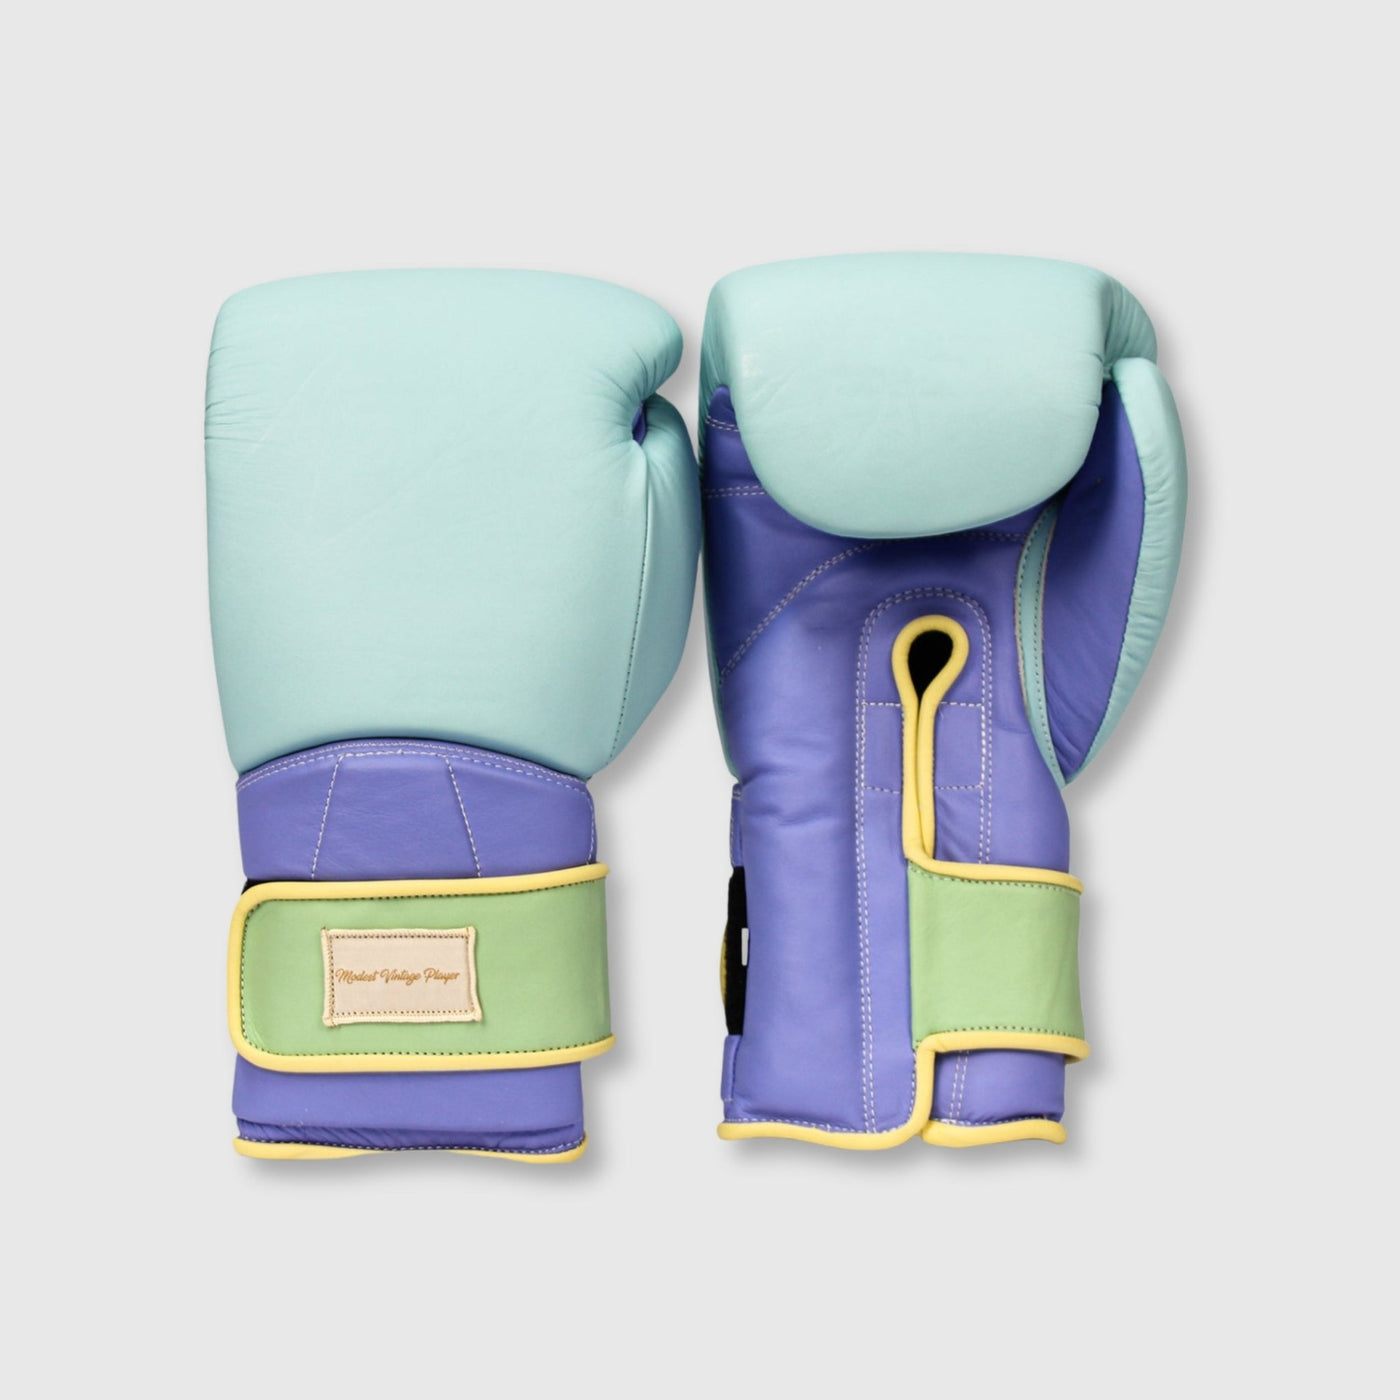 Elite Pastel Leather Boxing Gloves - Blue - MODEST VINTAGE PLAYER LTD